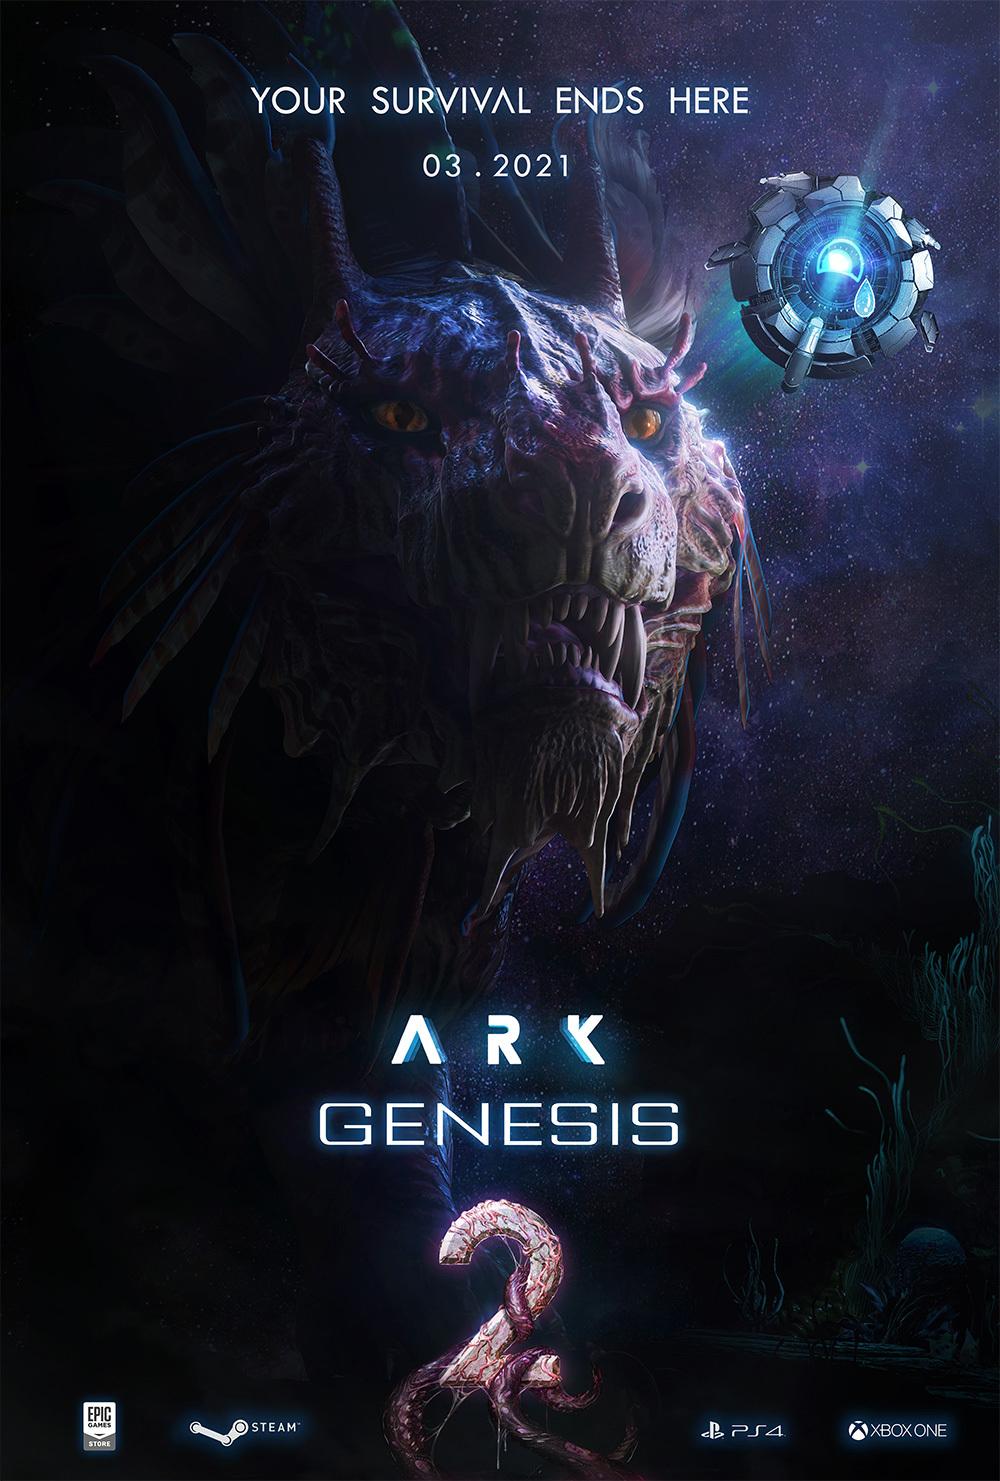 ARK' Genesis 2 Release Delayed, Crystal Isles and TLC 3 Get